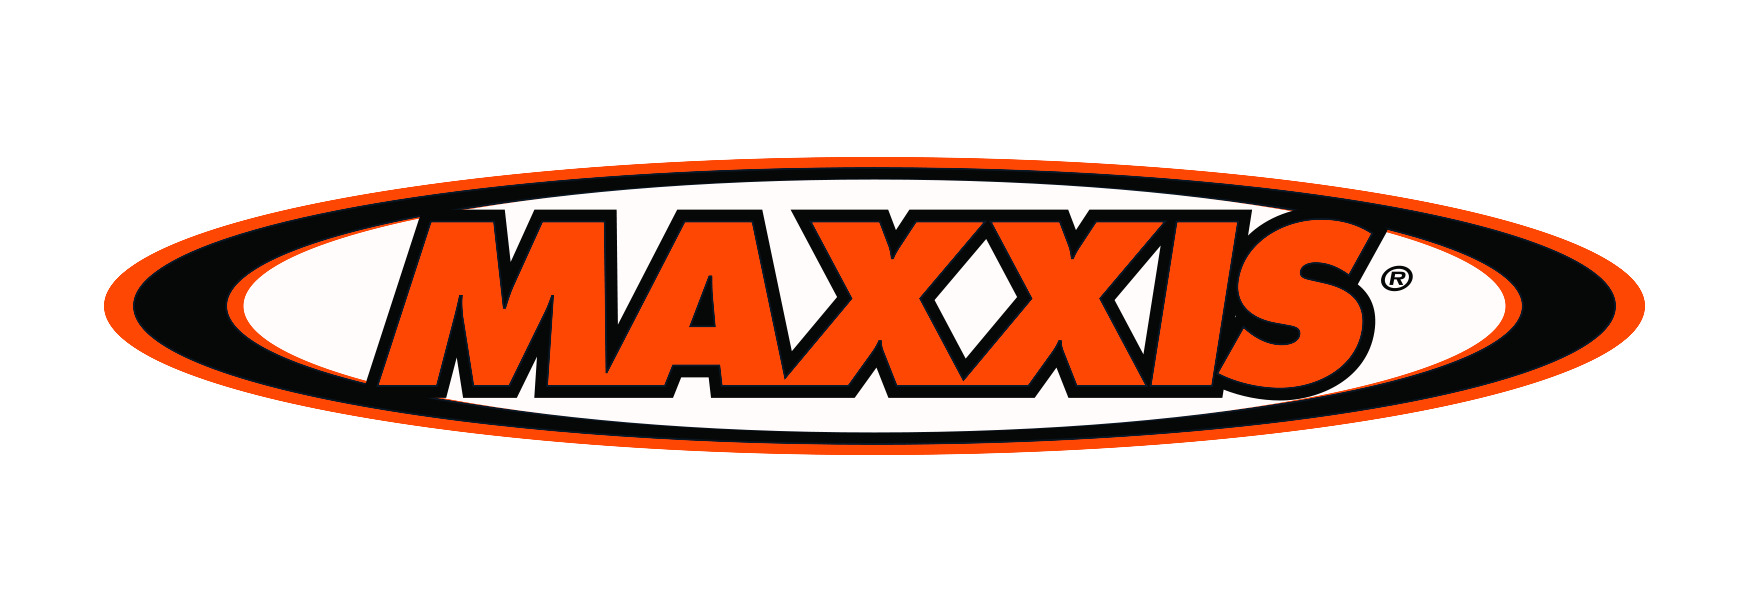 Bảng giá lốp xe tải ô tô Maxxis chính hãng cập nhật thị trường năm 2017